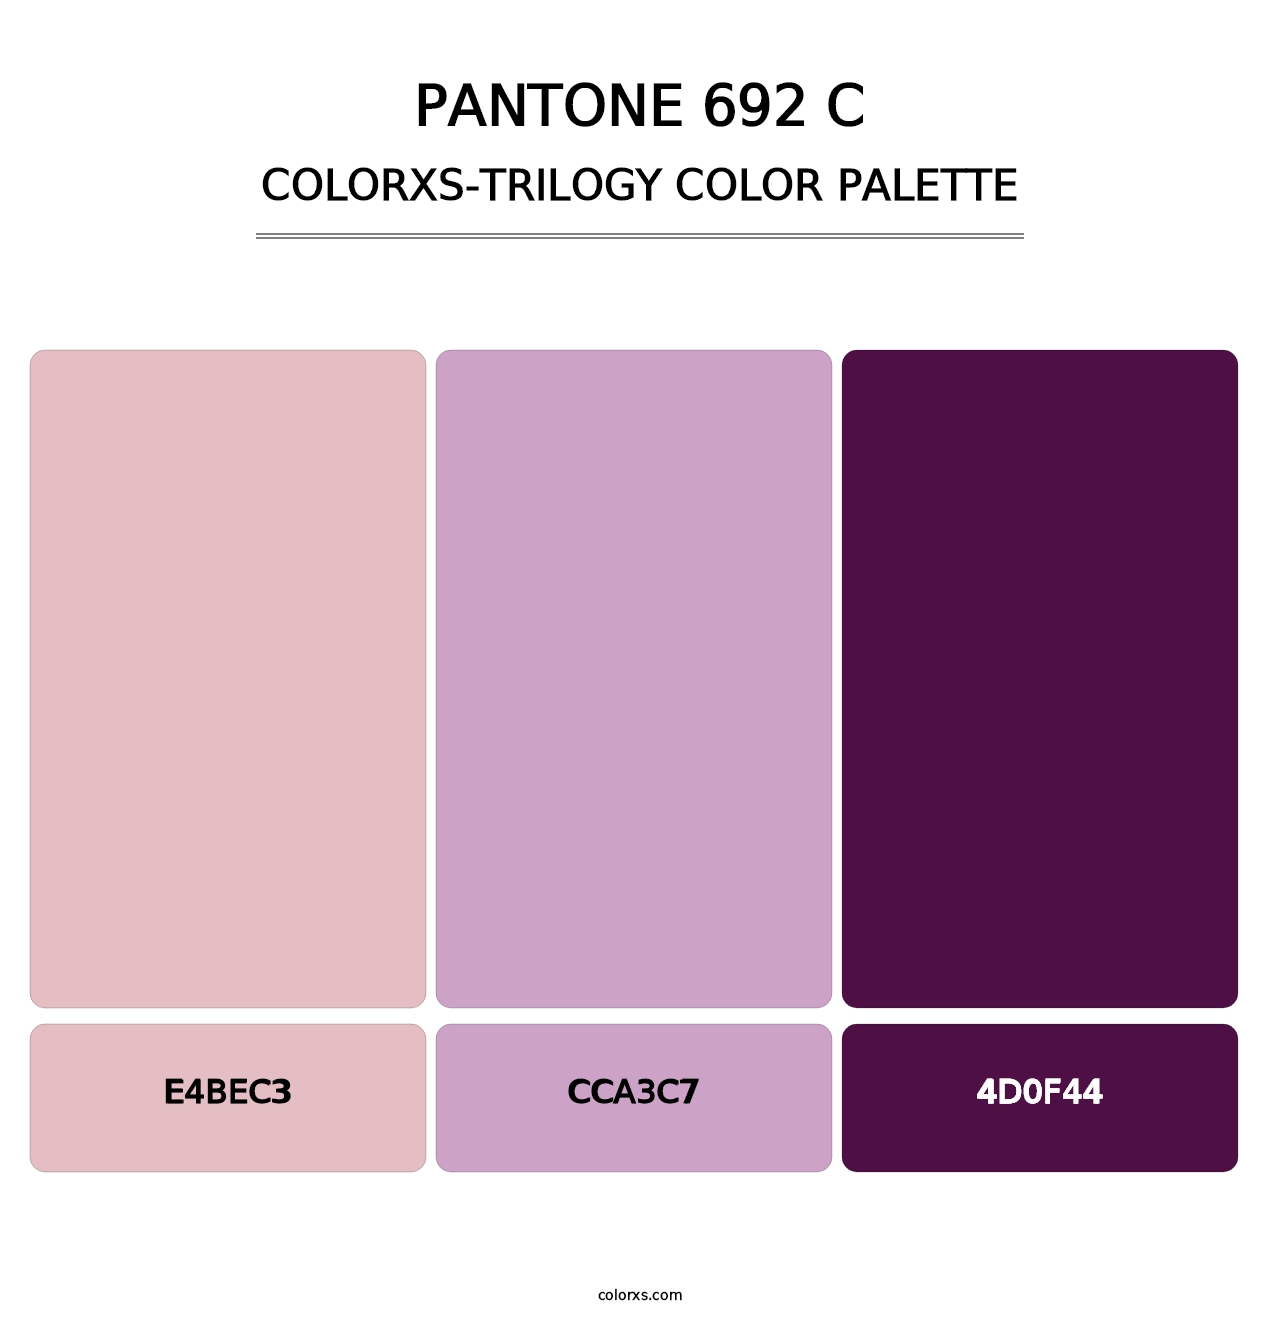 PANTONE 692 C - Colorxs Trilogy Palette